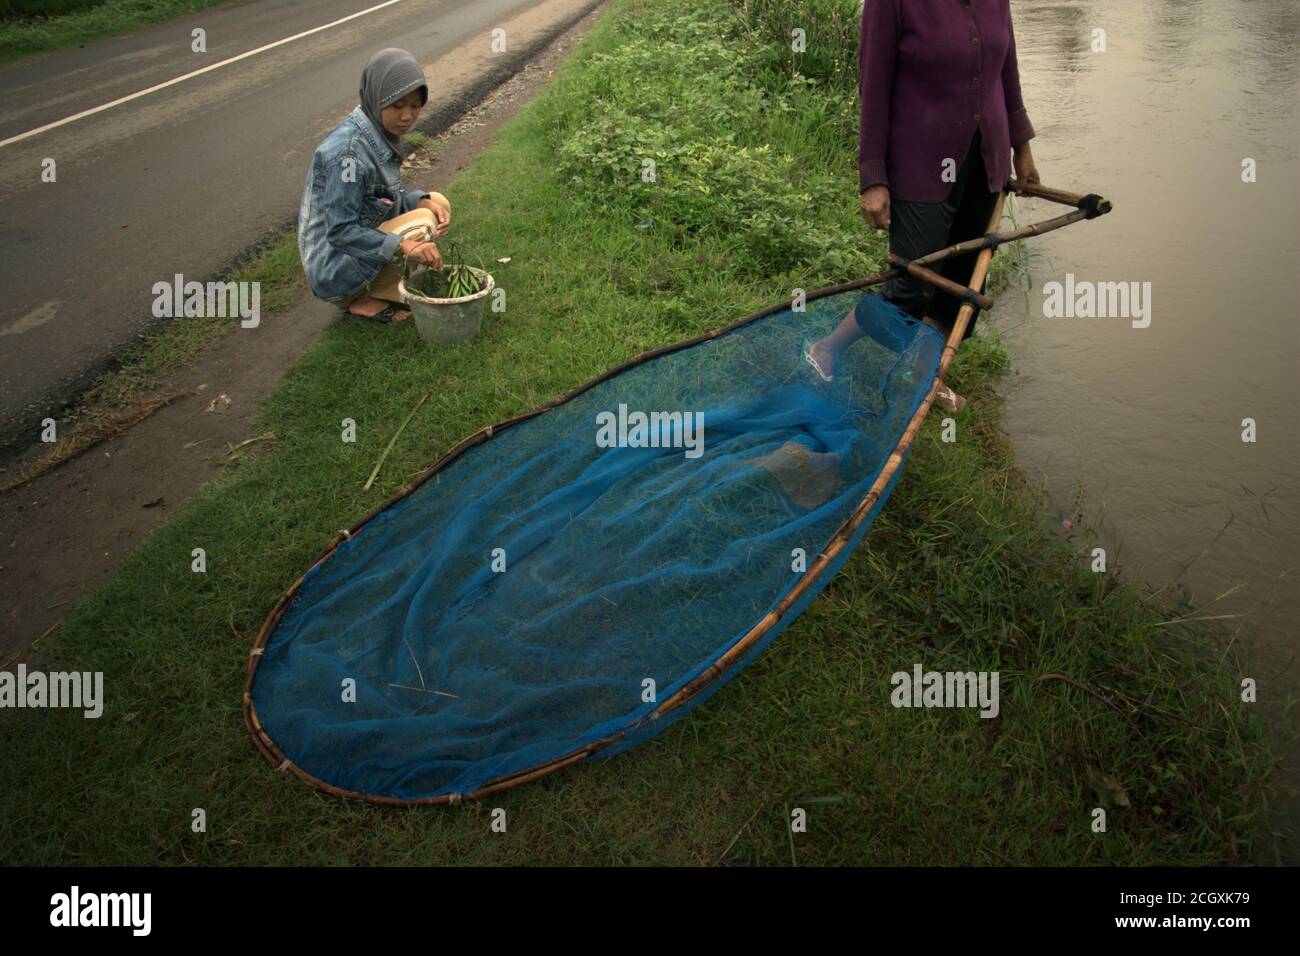 Une femme tenant une chathnet, se préparer à pêcher en se tenant sur la rive d'un canal d'irrigation à Karawang regency, province de Java Ouest, Indonésie. Banque D'Images